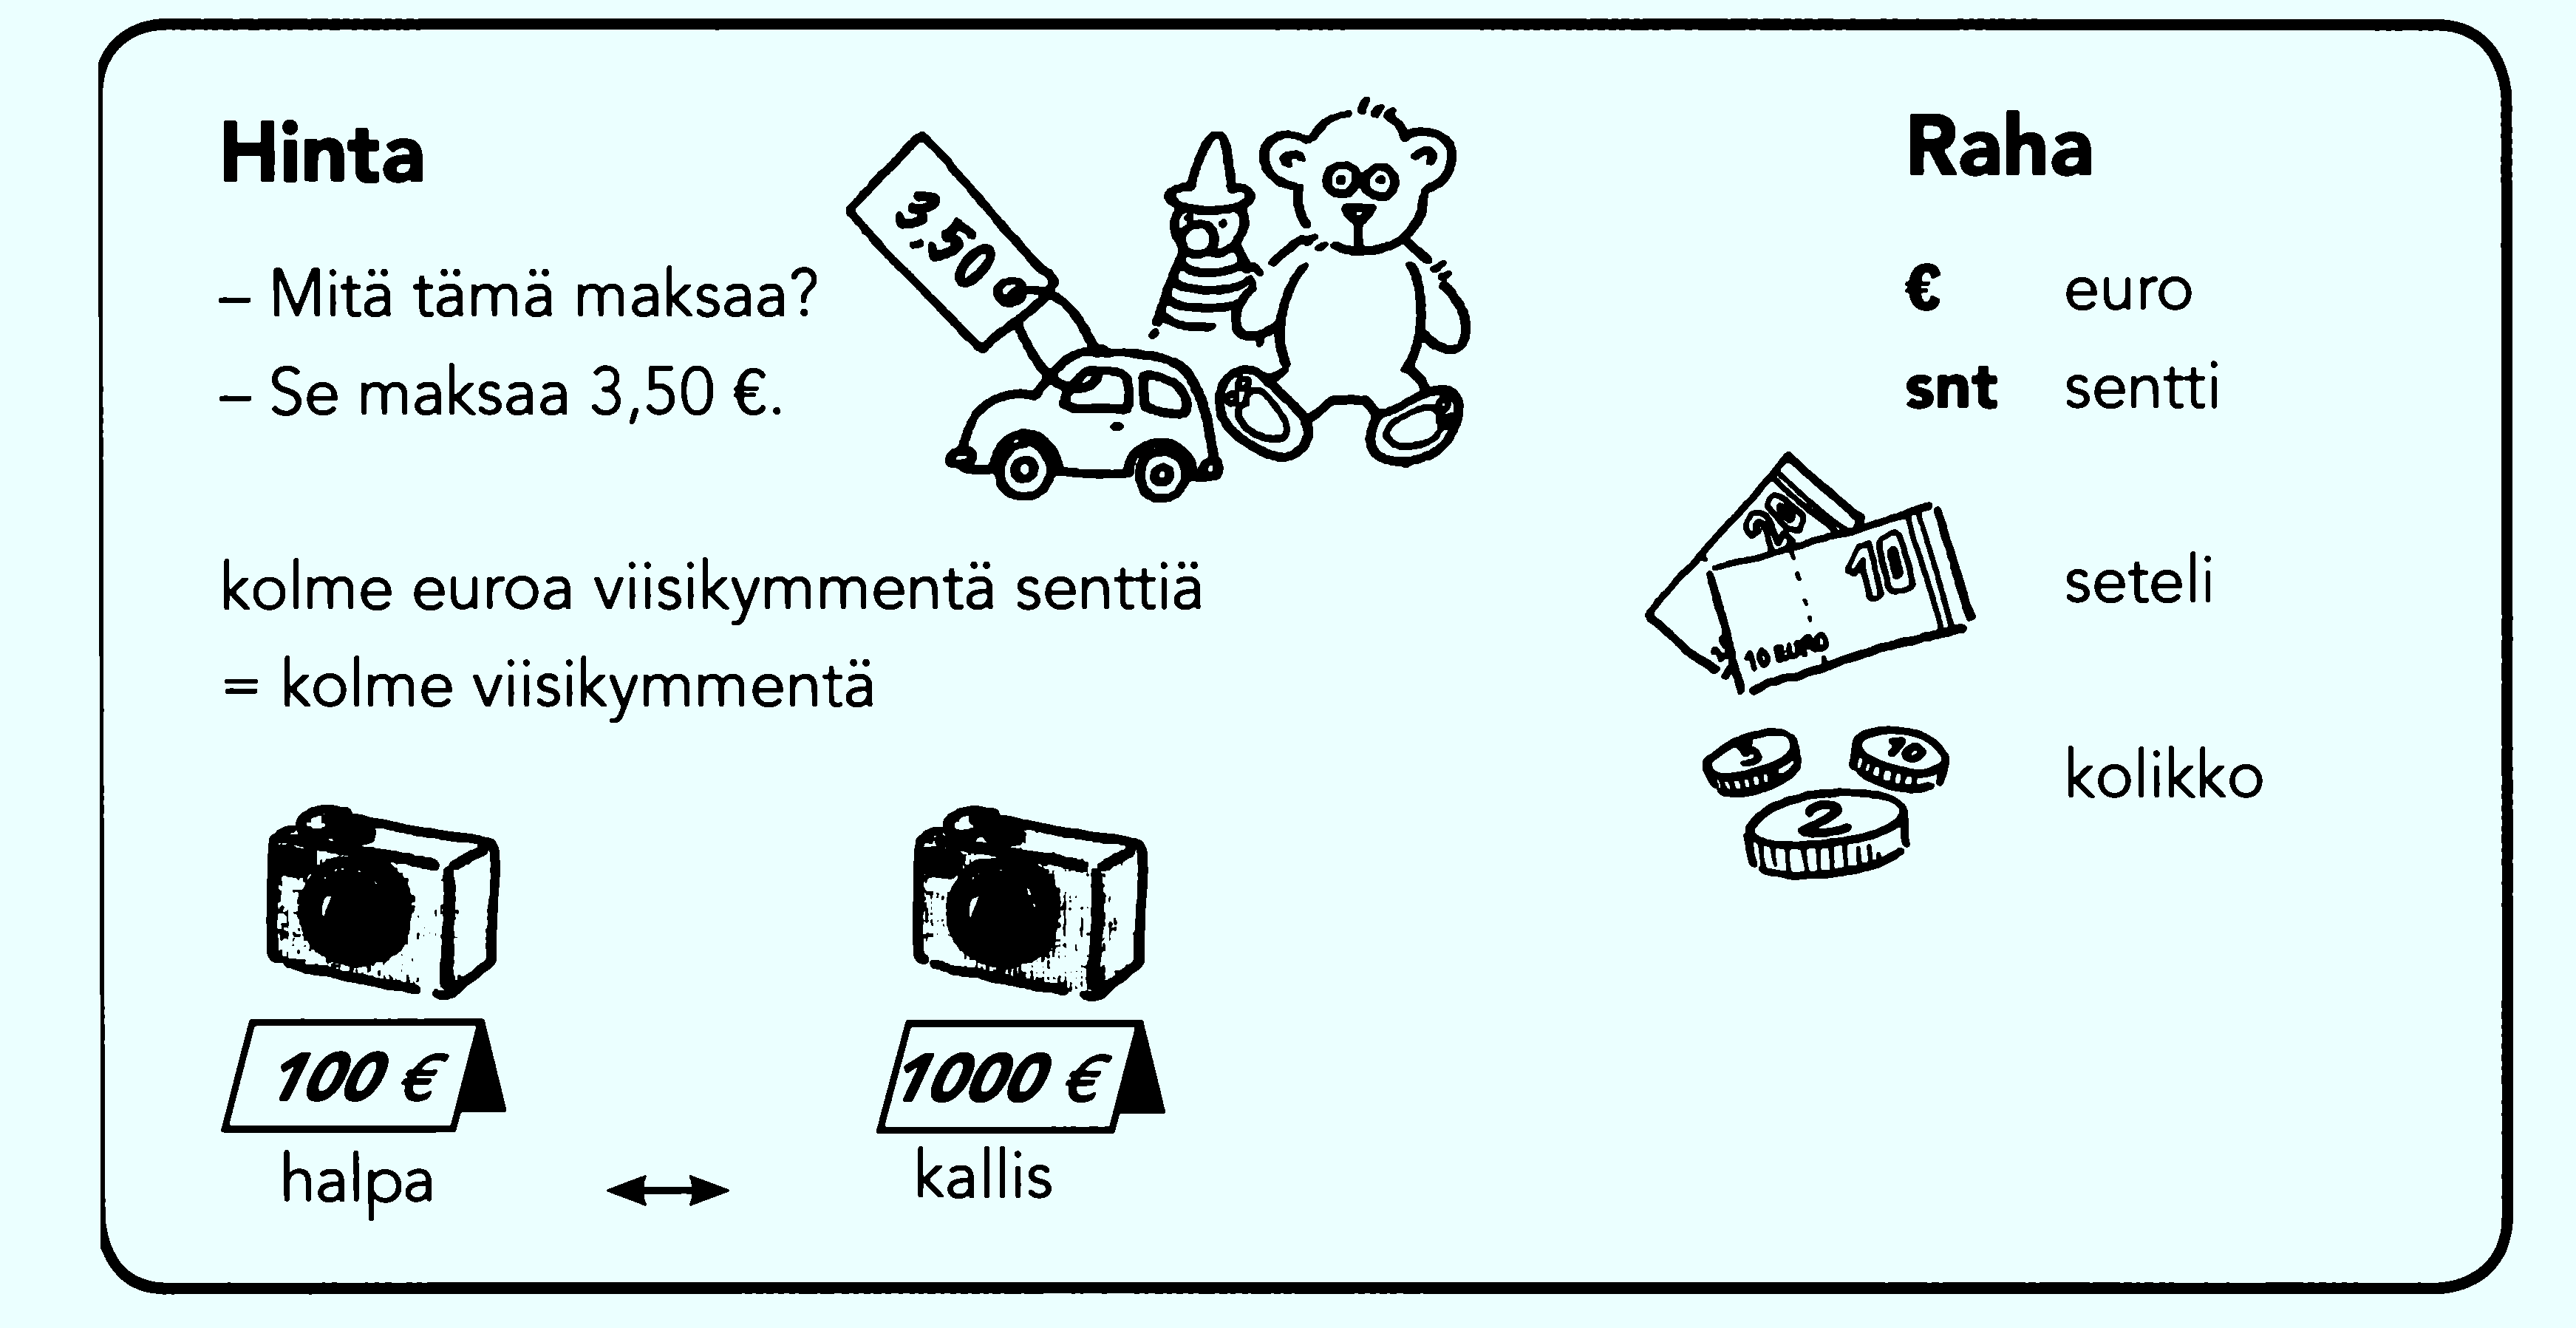 hinta-finskii-tsena